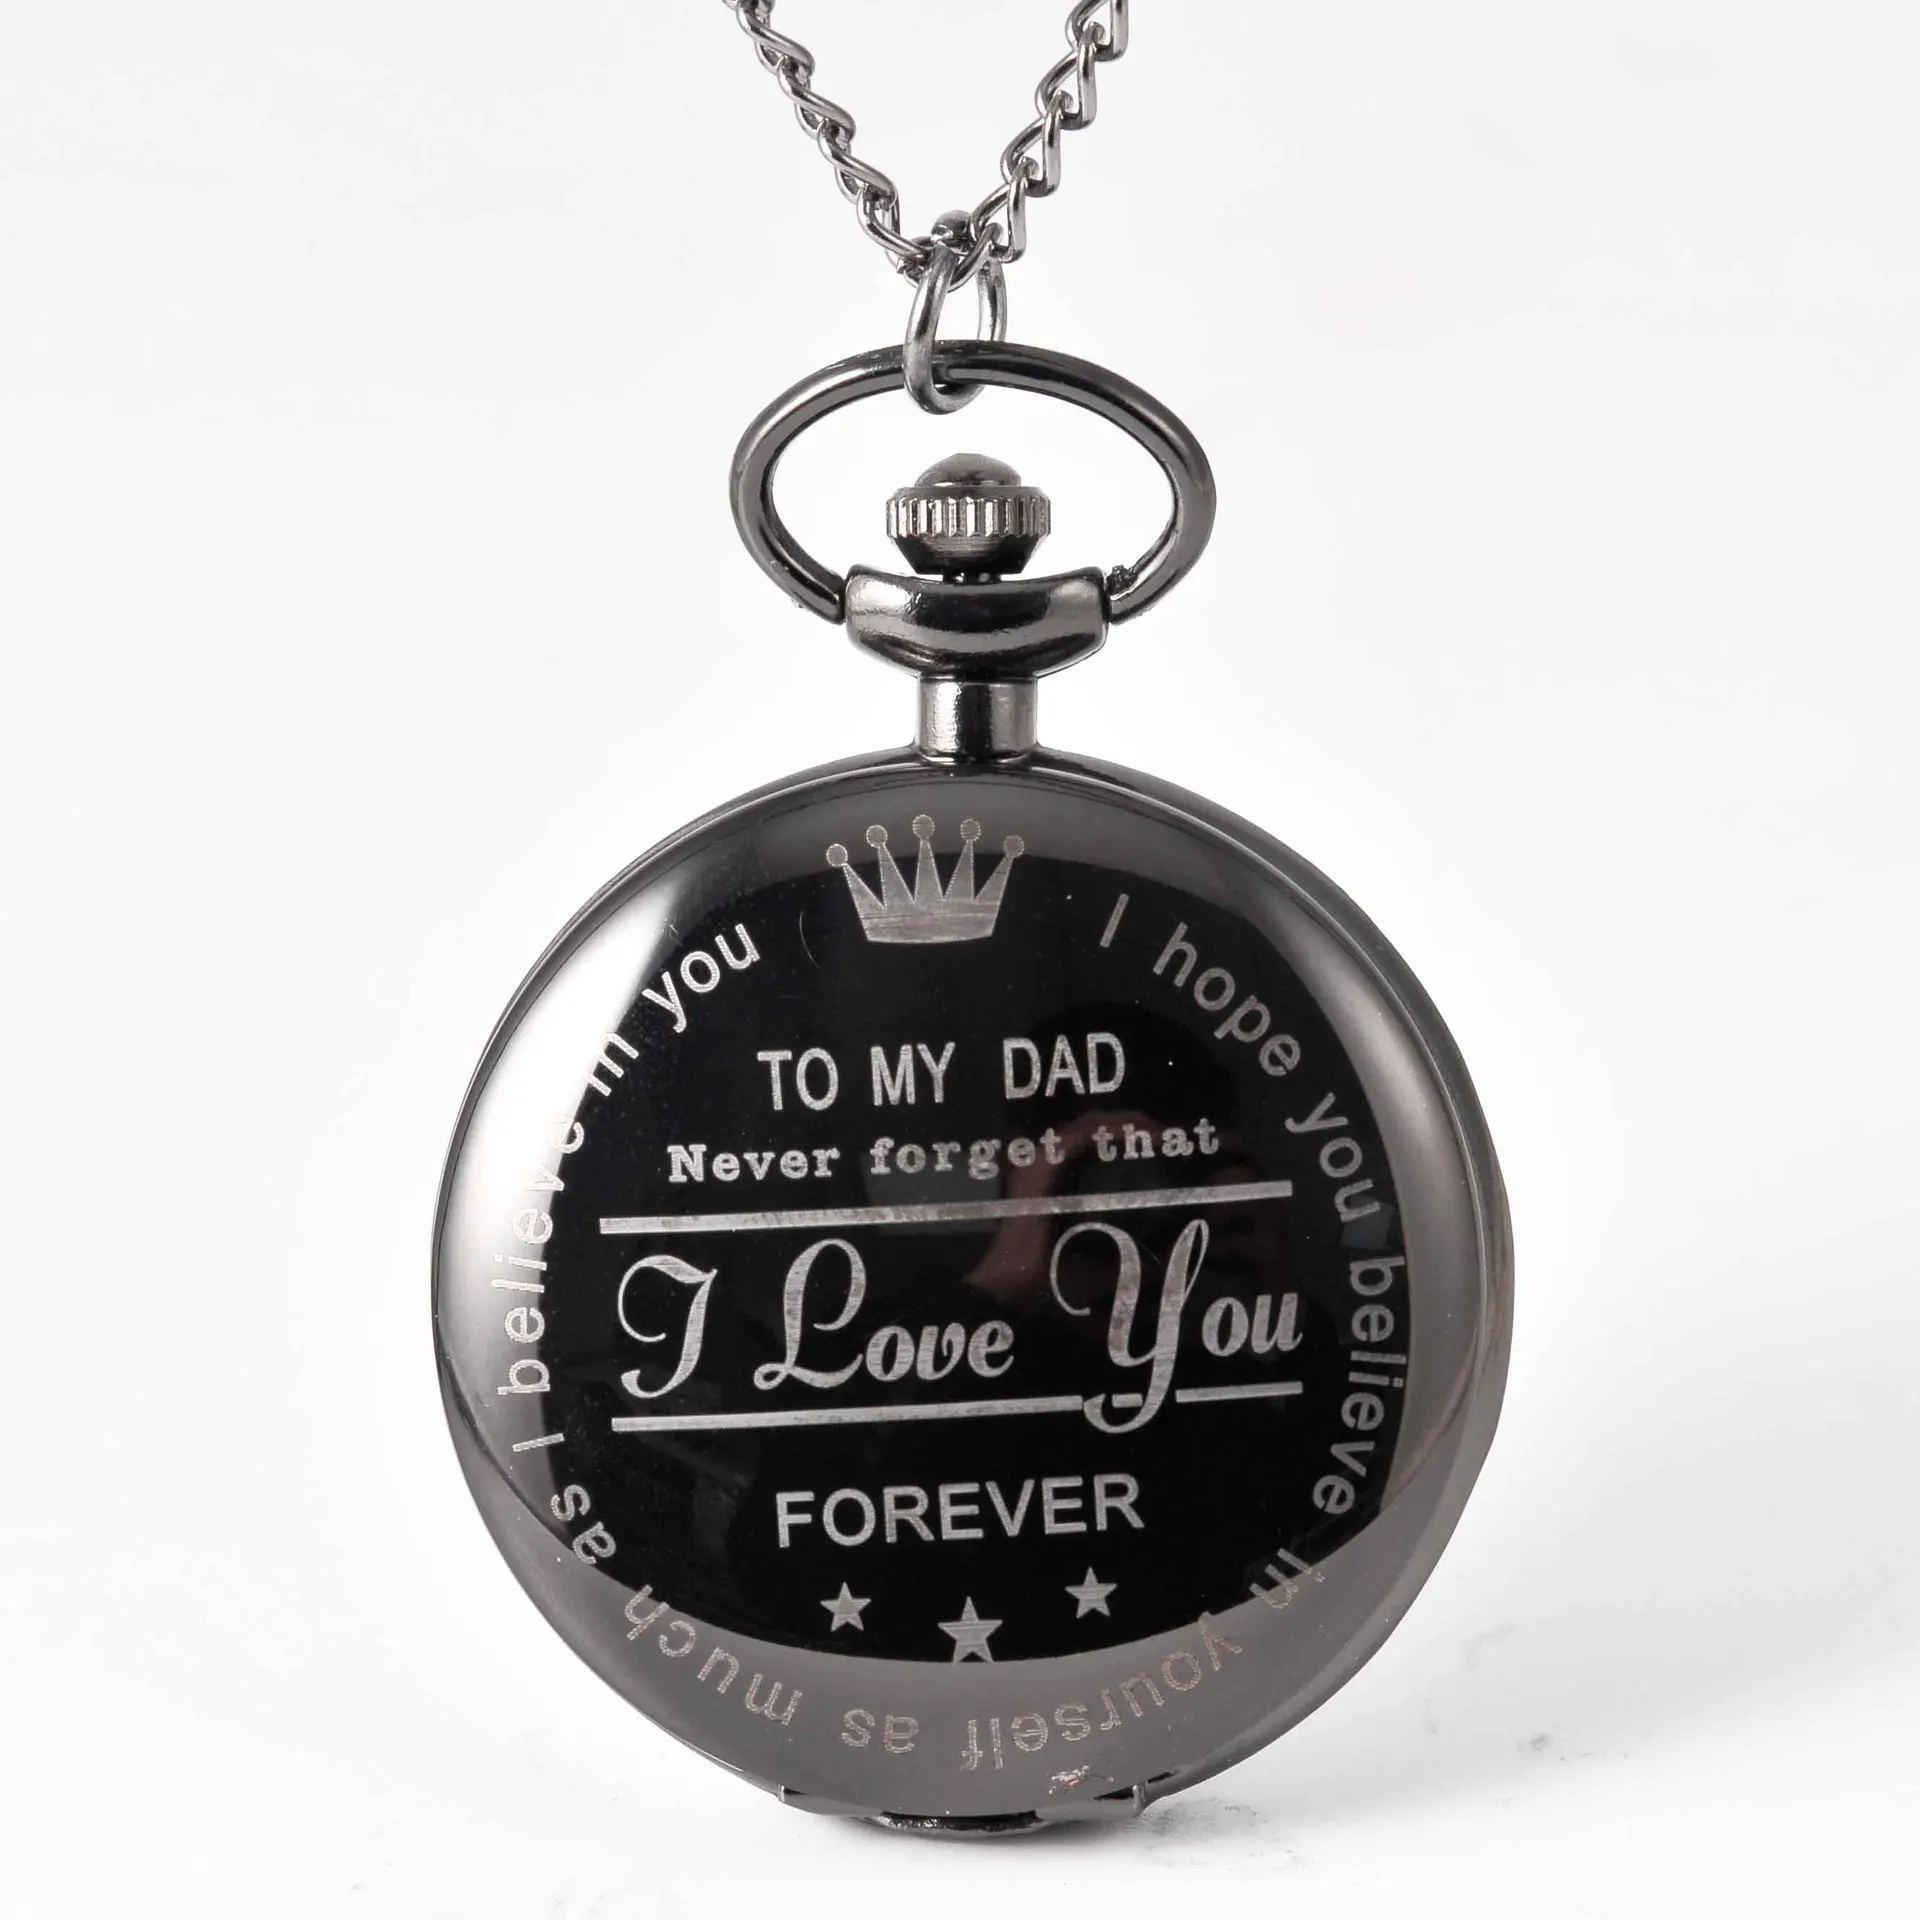 

Карманные часы в мои карманные часы "папа" Ожерелье I Love You Forever кварцевые часы на День отца подарок часы